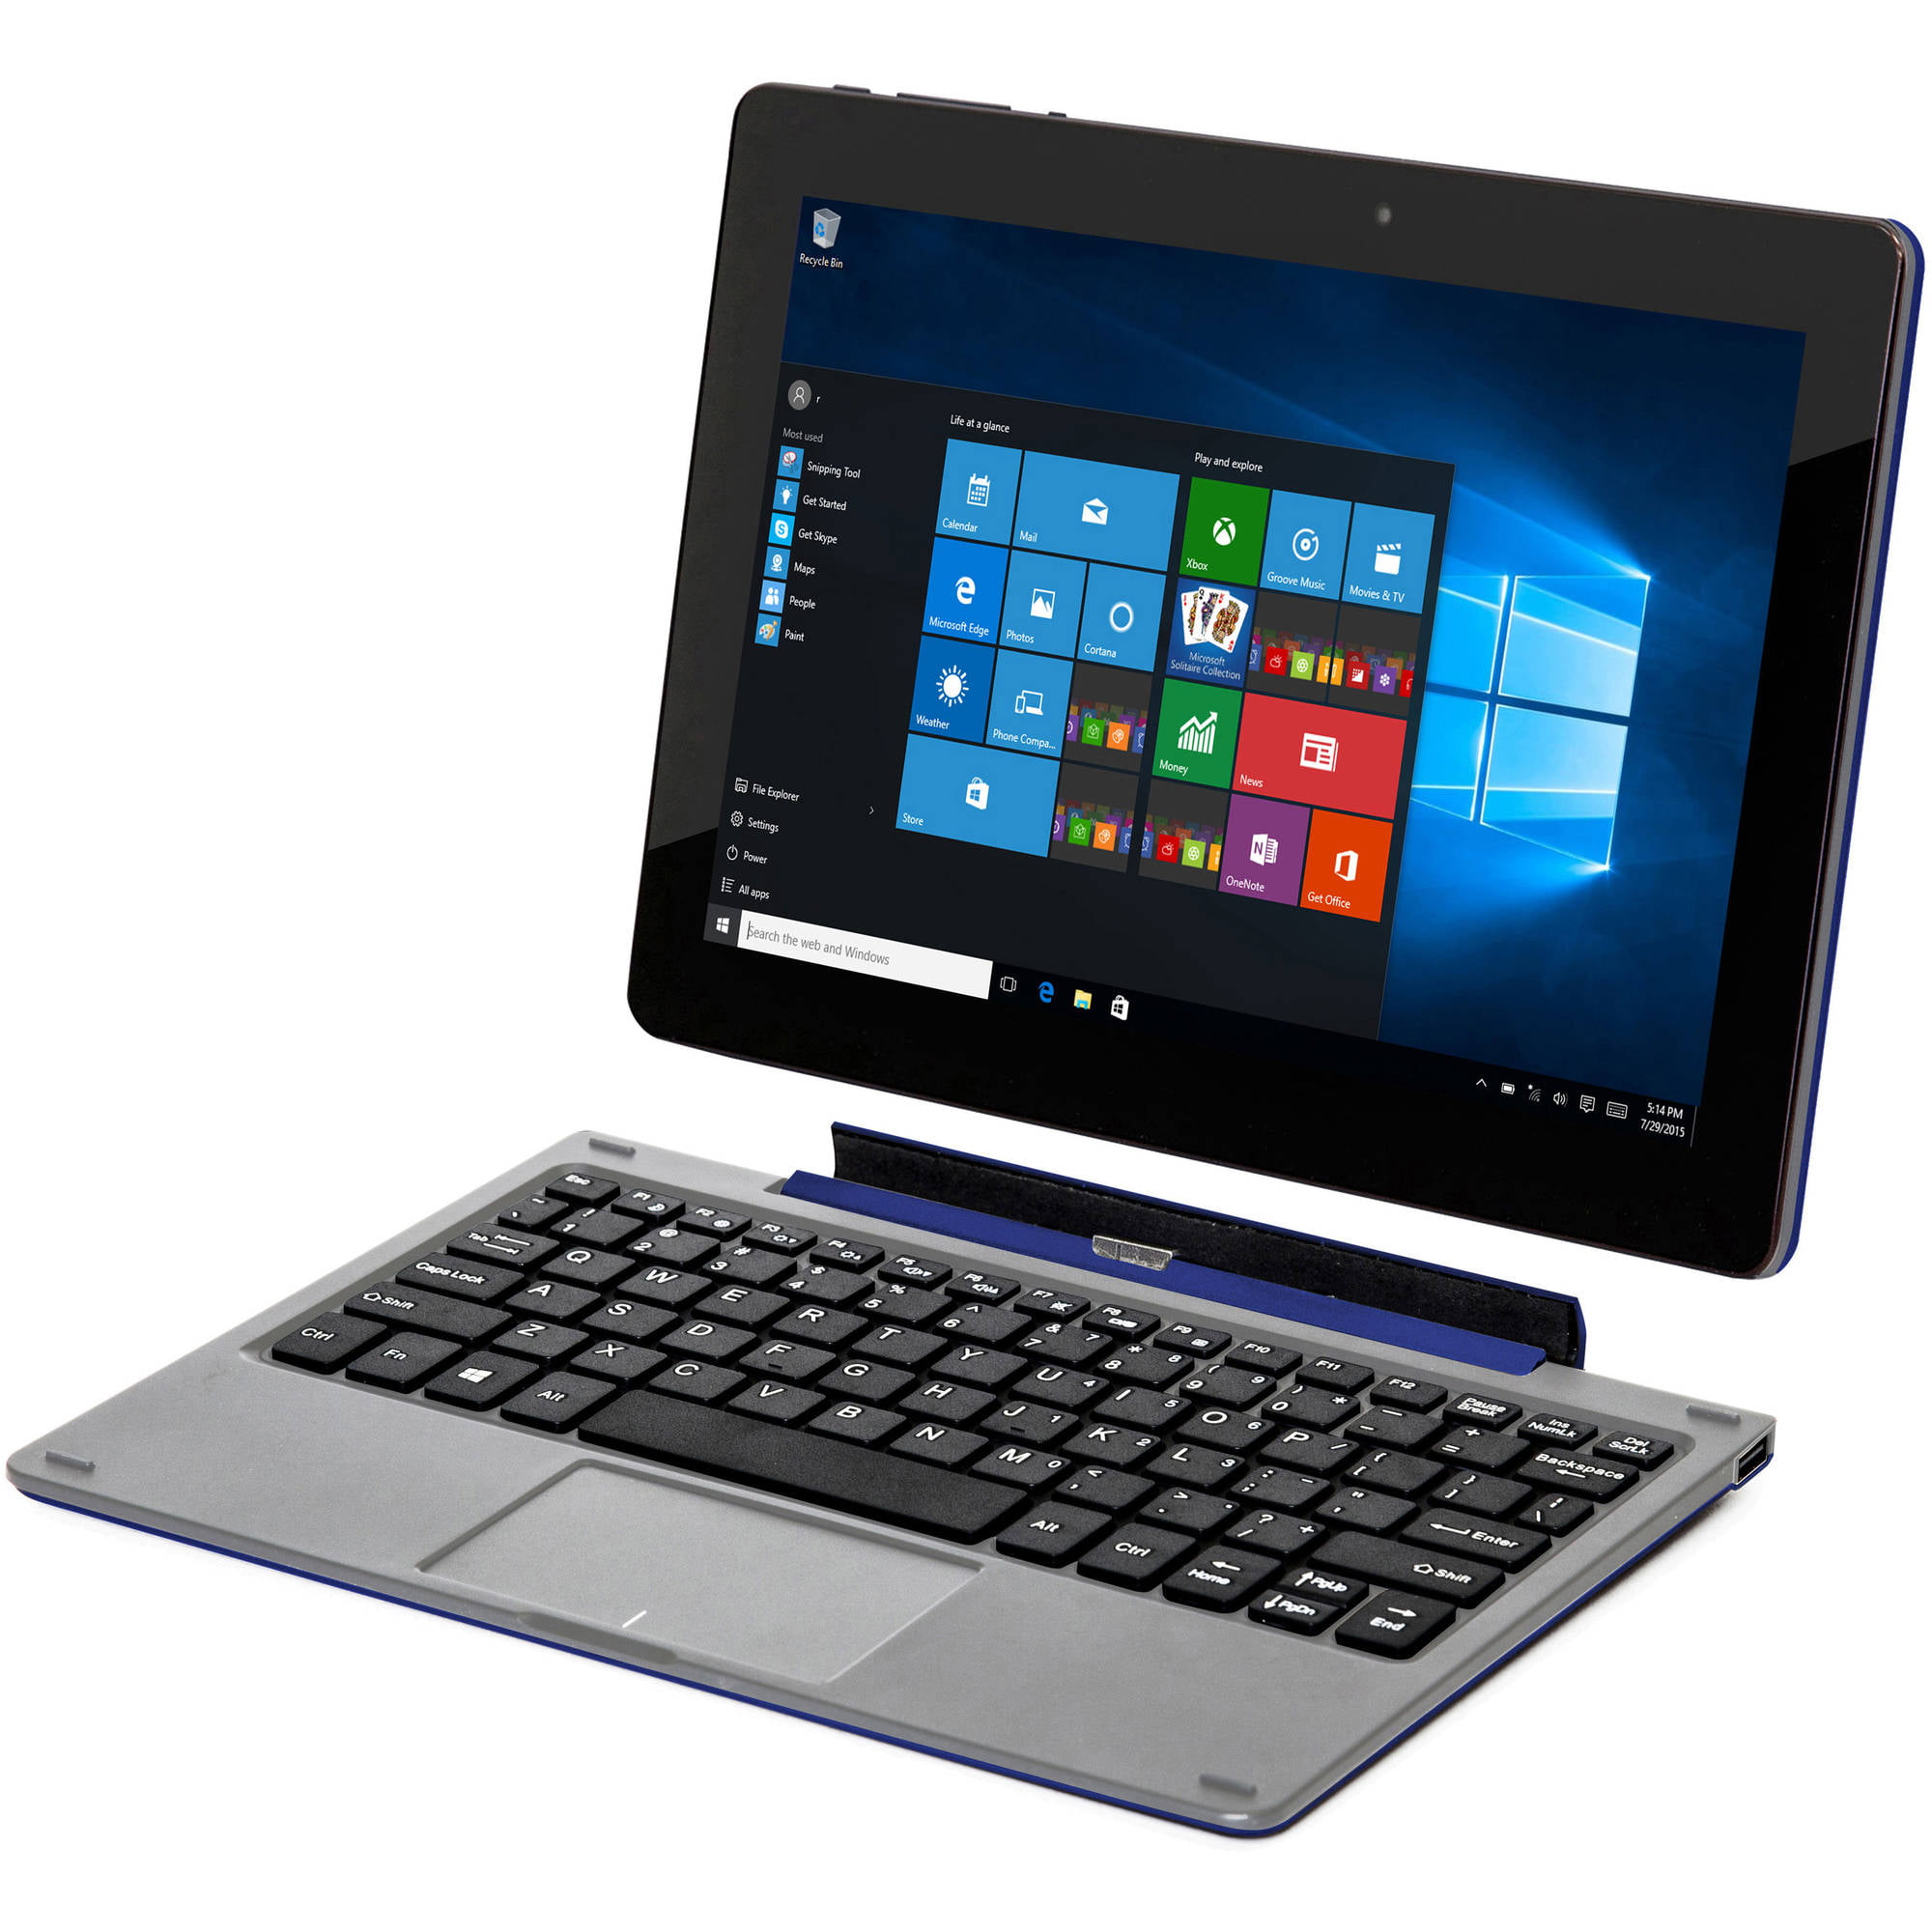 Nextbook Flexx 10 1 2 In 1 Tablet 32gb Intel Atom Z3735f Quad Core Processor Windows 10 Black Walmart Com Walmart Com